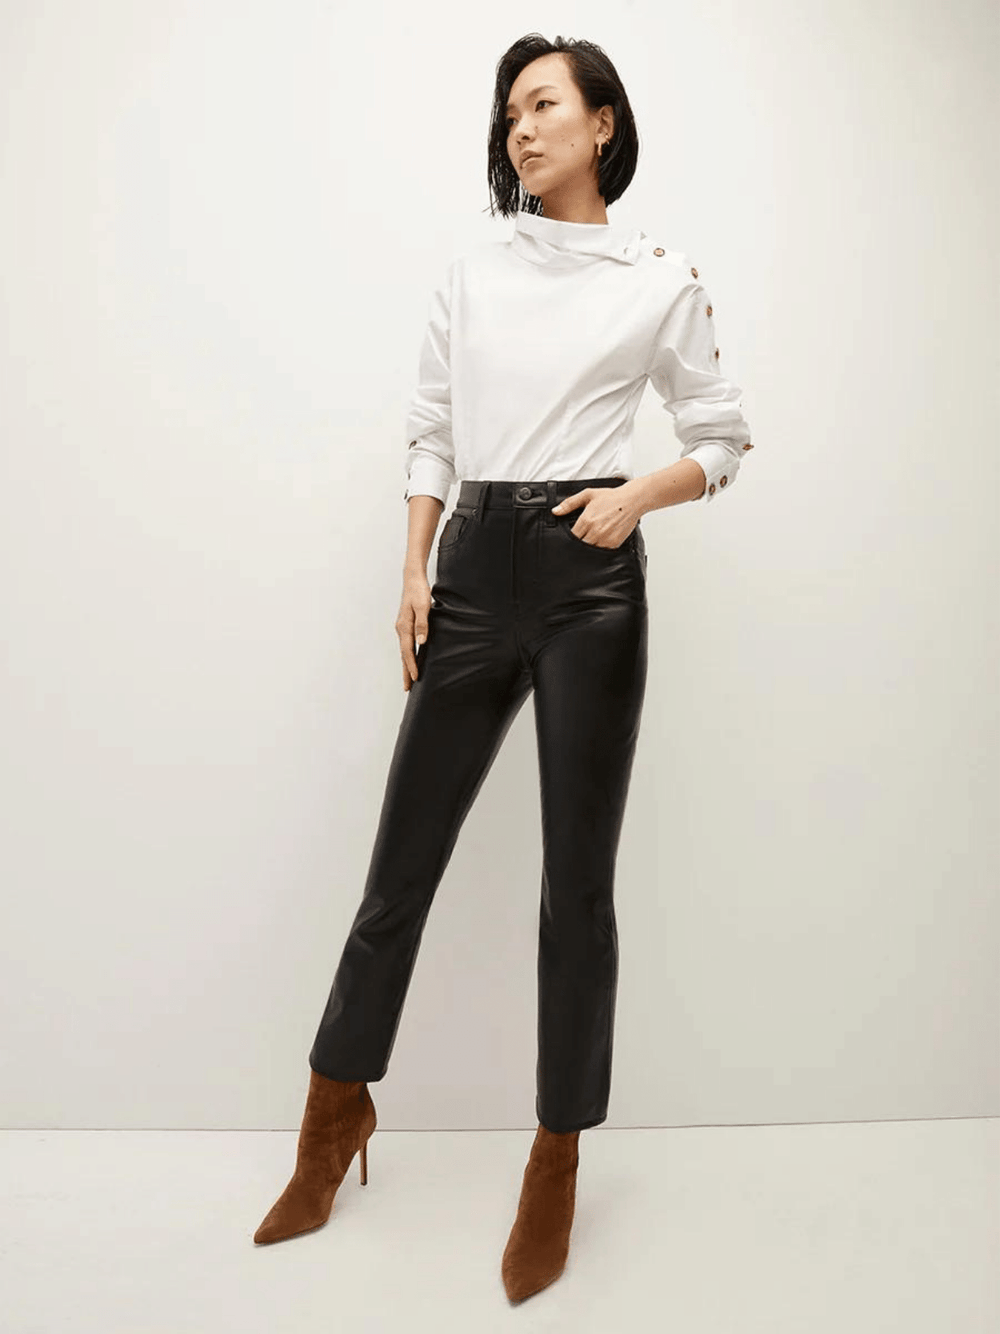 Ein Model trägt eine stilvolle weiße Bluse mit einem asymmetrischen Kragen und einer einzigartigen Knopfleiste entlang des linken Ärmels, kombiniert mit schwarzen Lederhosen.